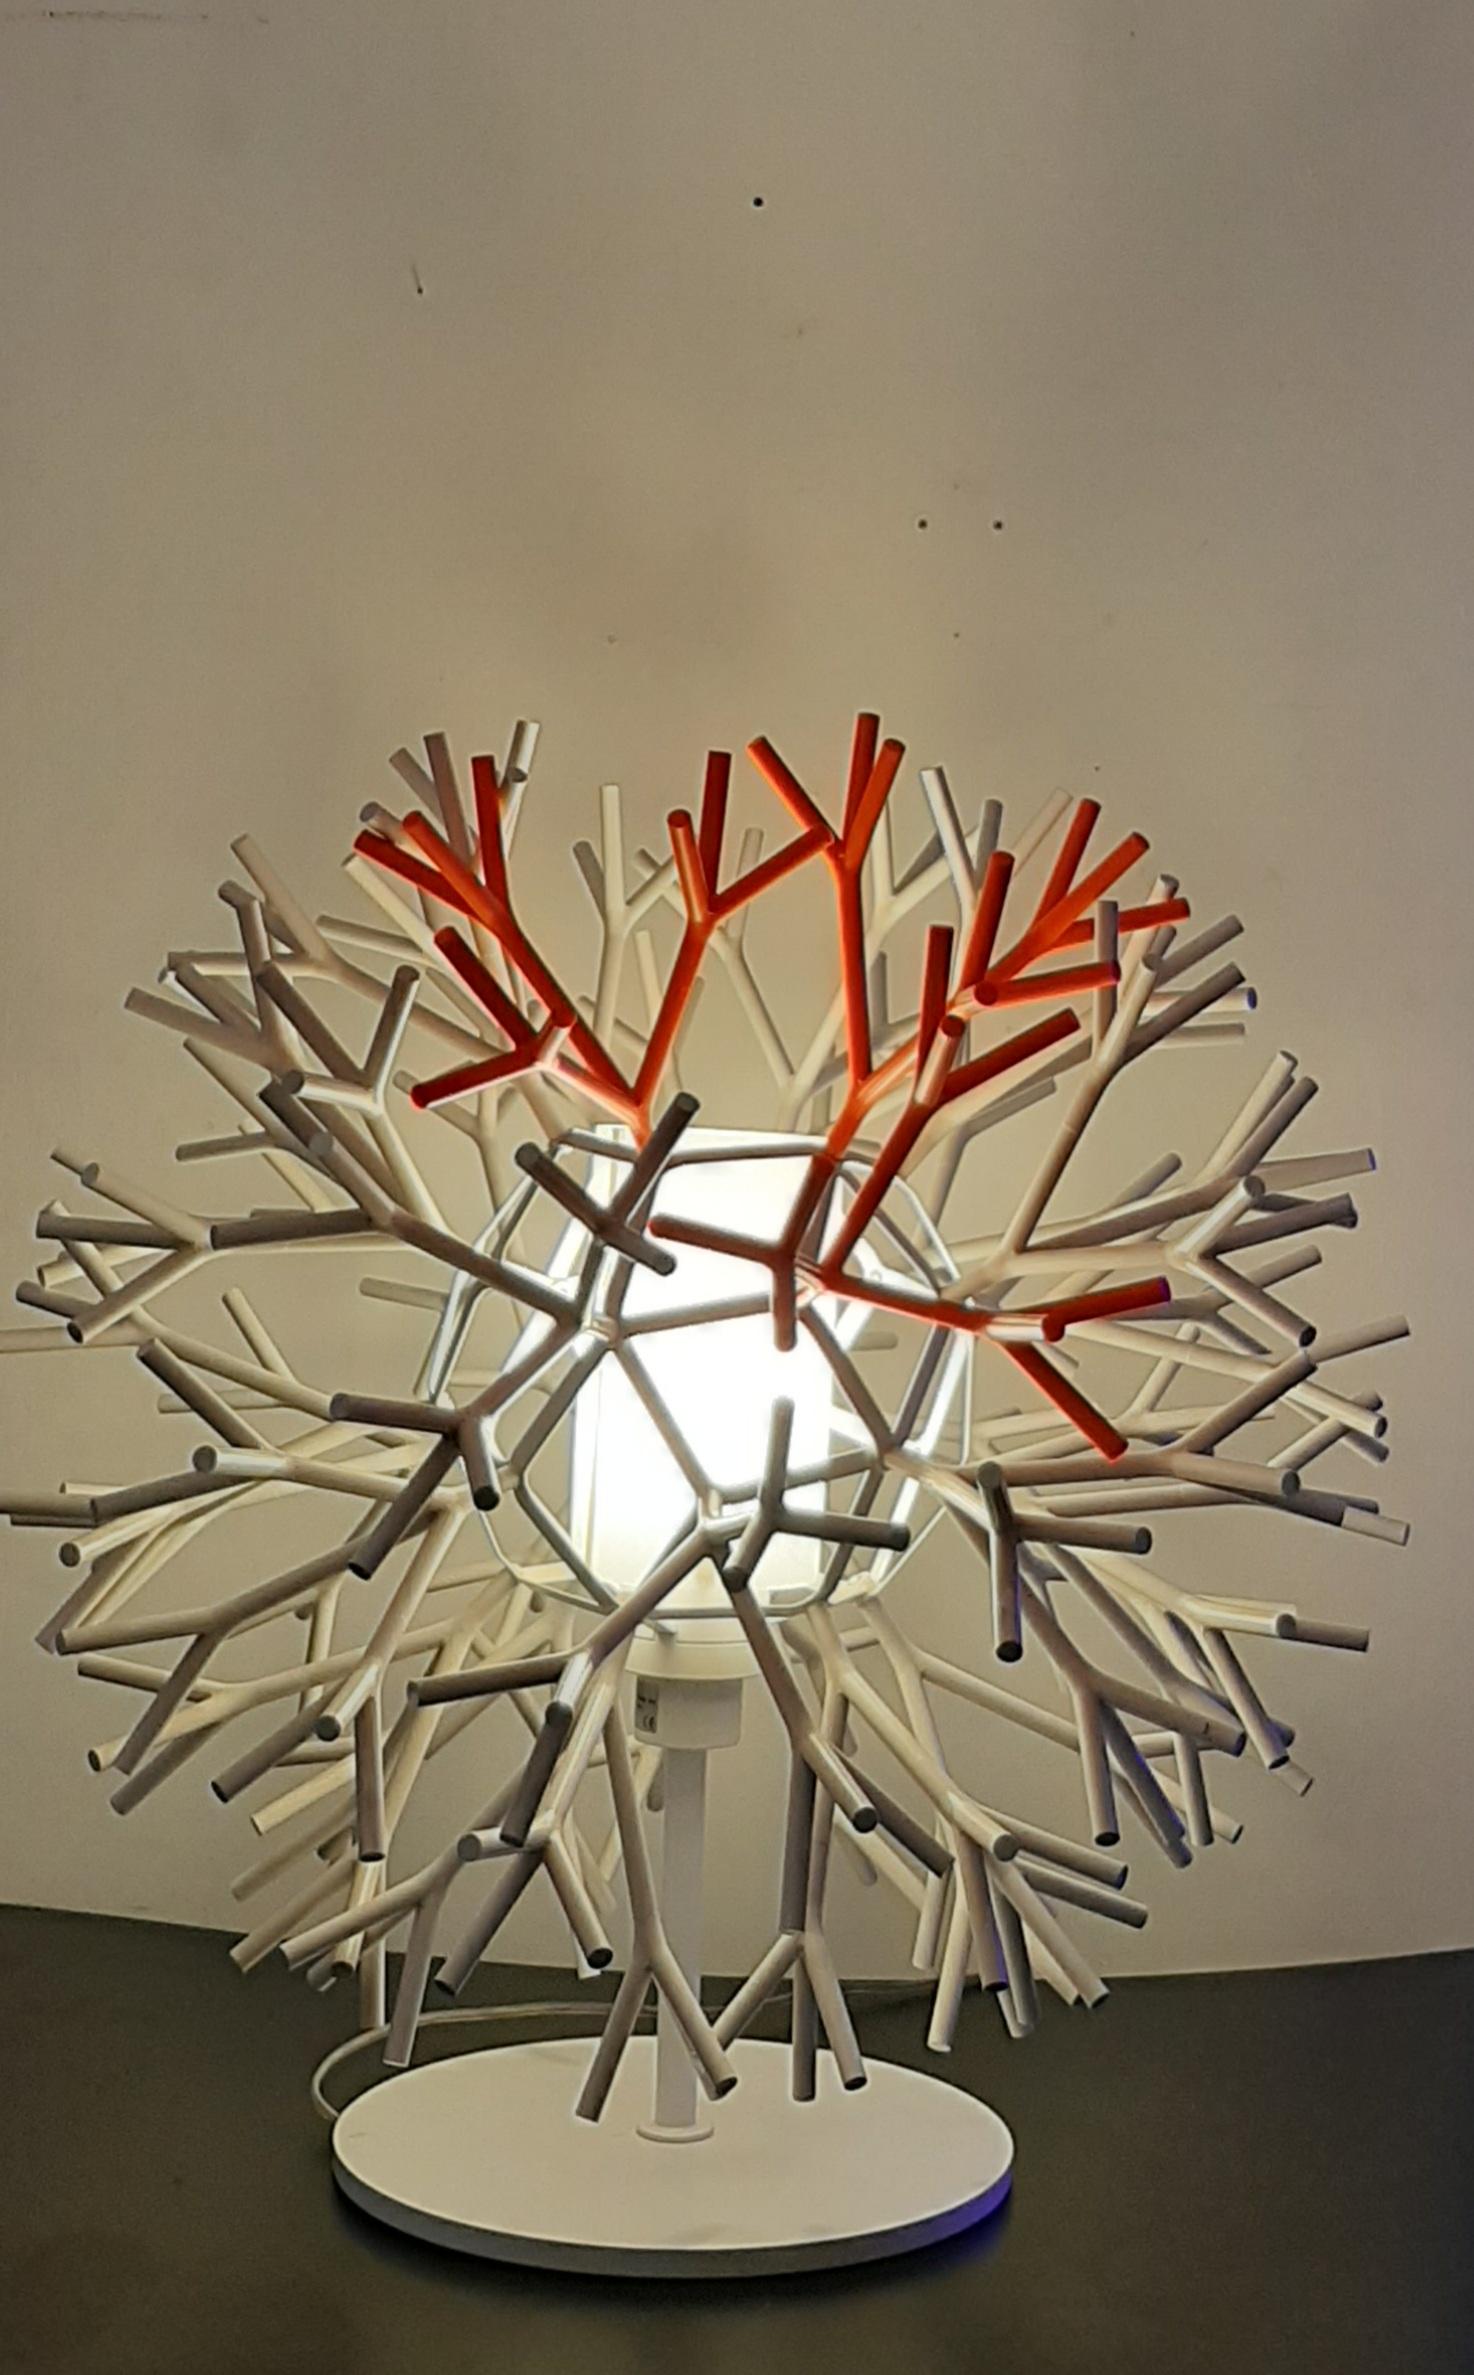 Lampada da tavolo Modello Coral  disegnata dallo studio Lagranja Design e prodotta da Pallucco Italia.
Lampada ricca ed articolata realizzate in ABS e composta da un elemento modulare che ricorda un ramo di corallo marino. 
